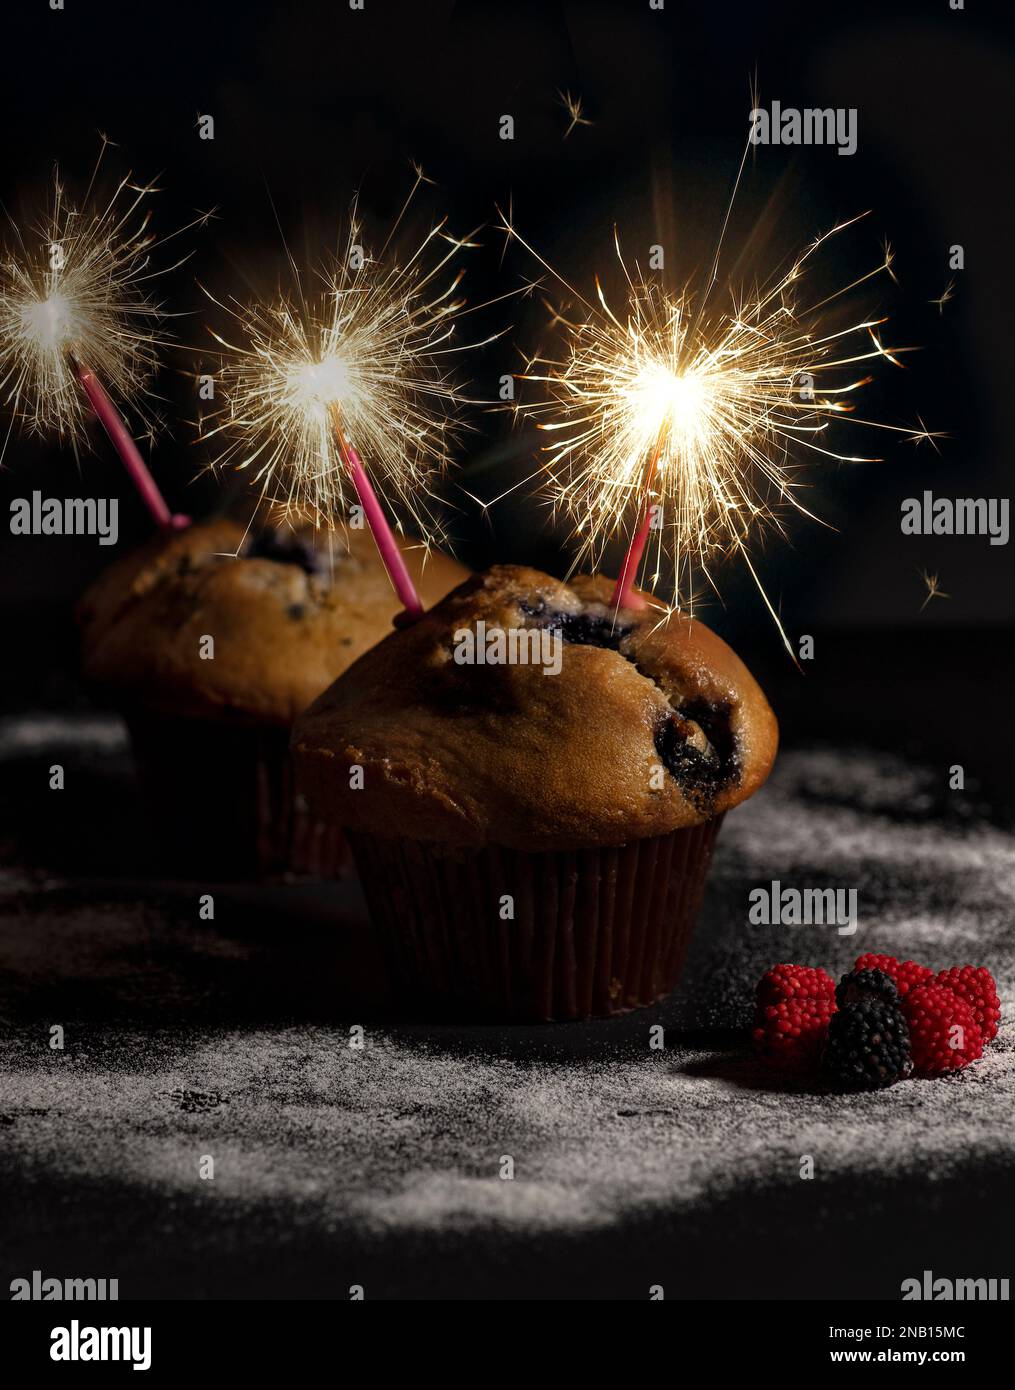 Feiern Sie die süßen Momente des Lebens mit diesen köstlichen Cranberry-Muffins, geschmückt mit glitzernden Kerzen vor schwarzem Hintergrund Stockfoto